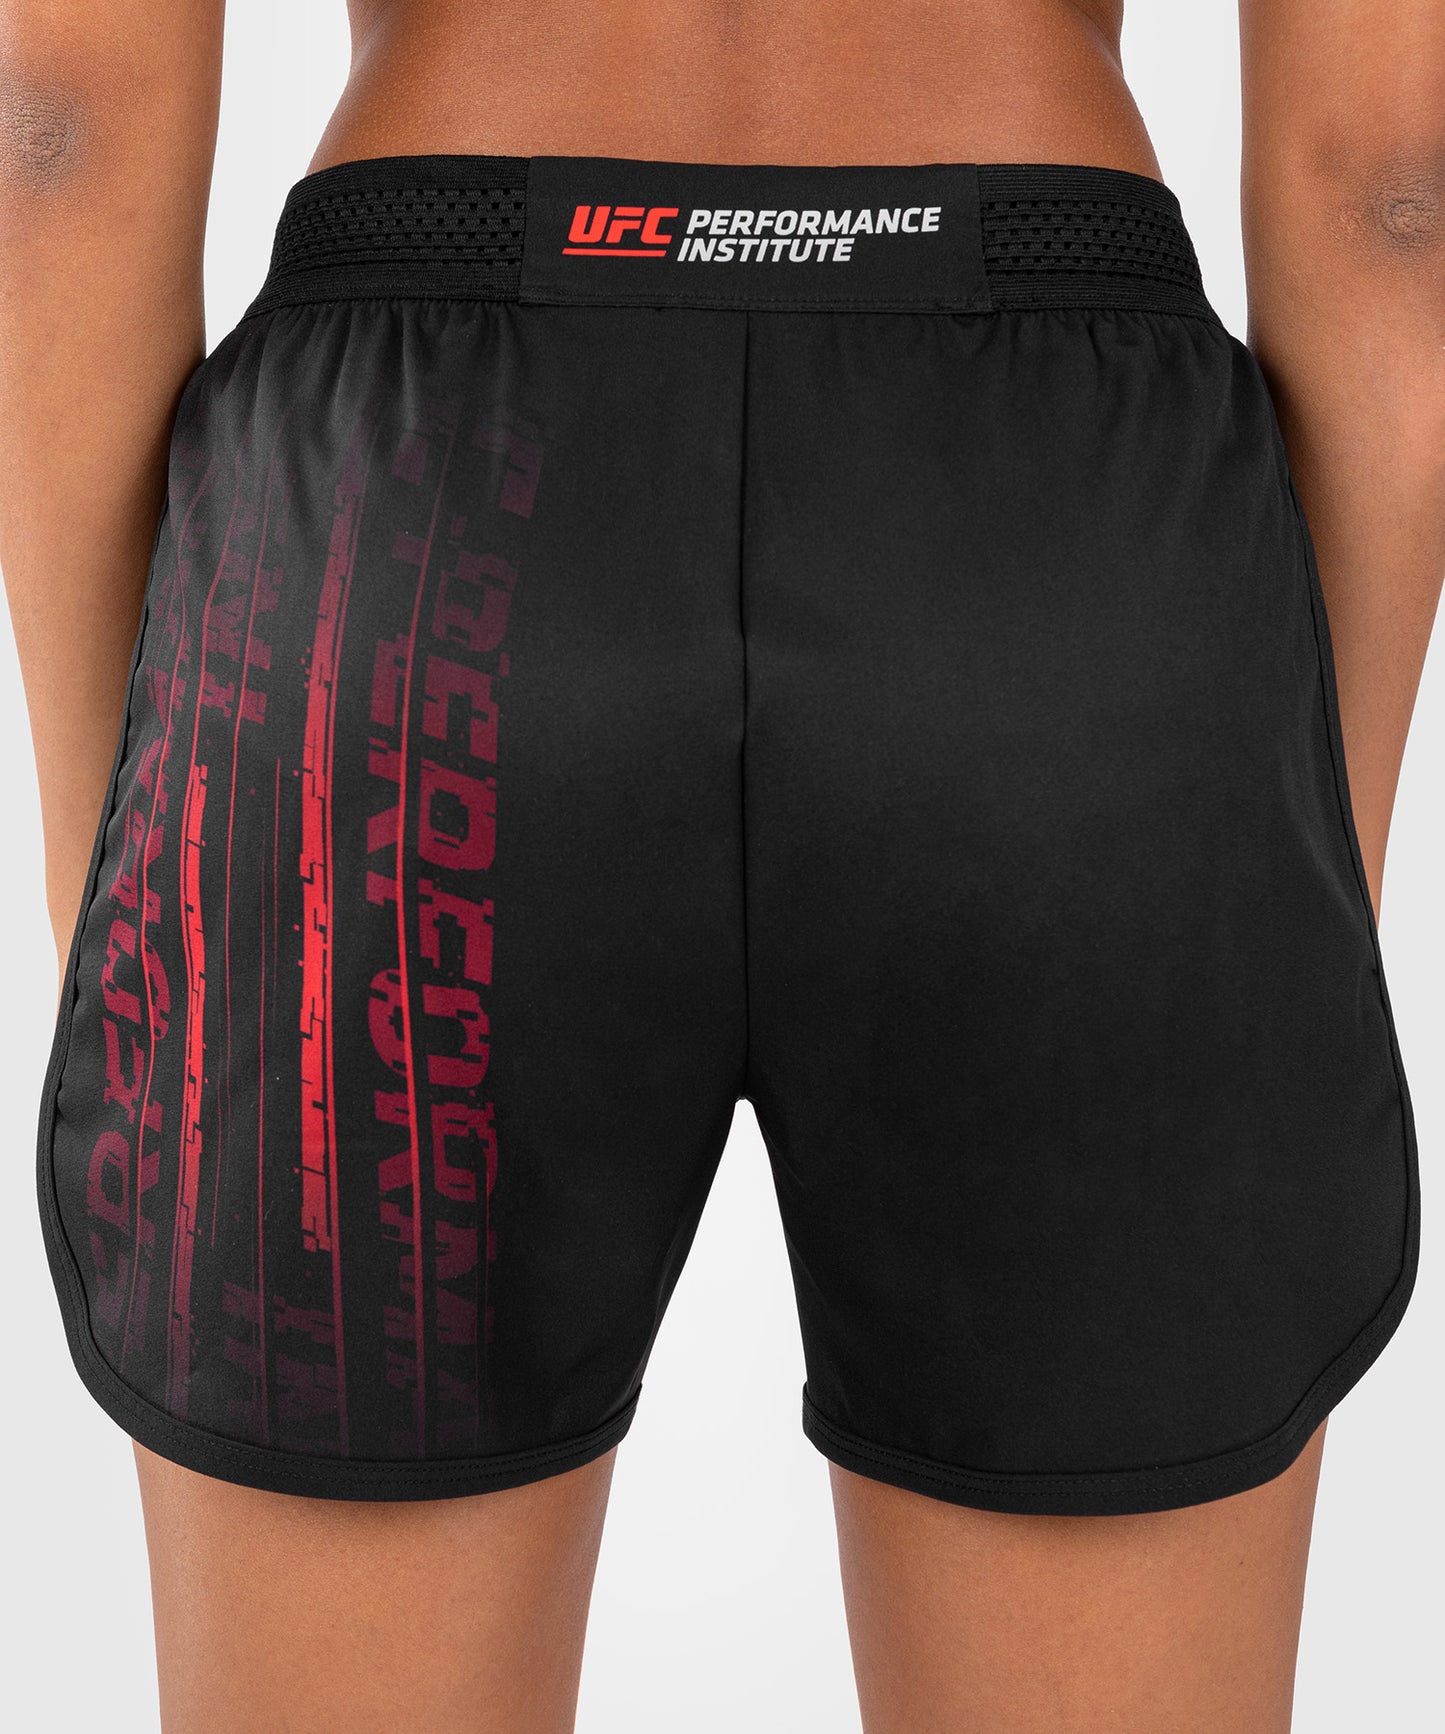 UFC Venum Performance Institute 2.0 Pantalón Corto de Entrenamiento para Mujer - Negro/Rojo